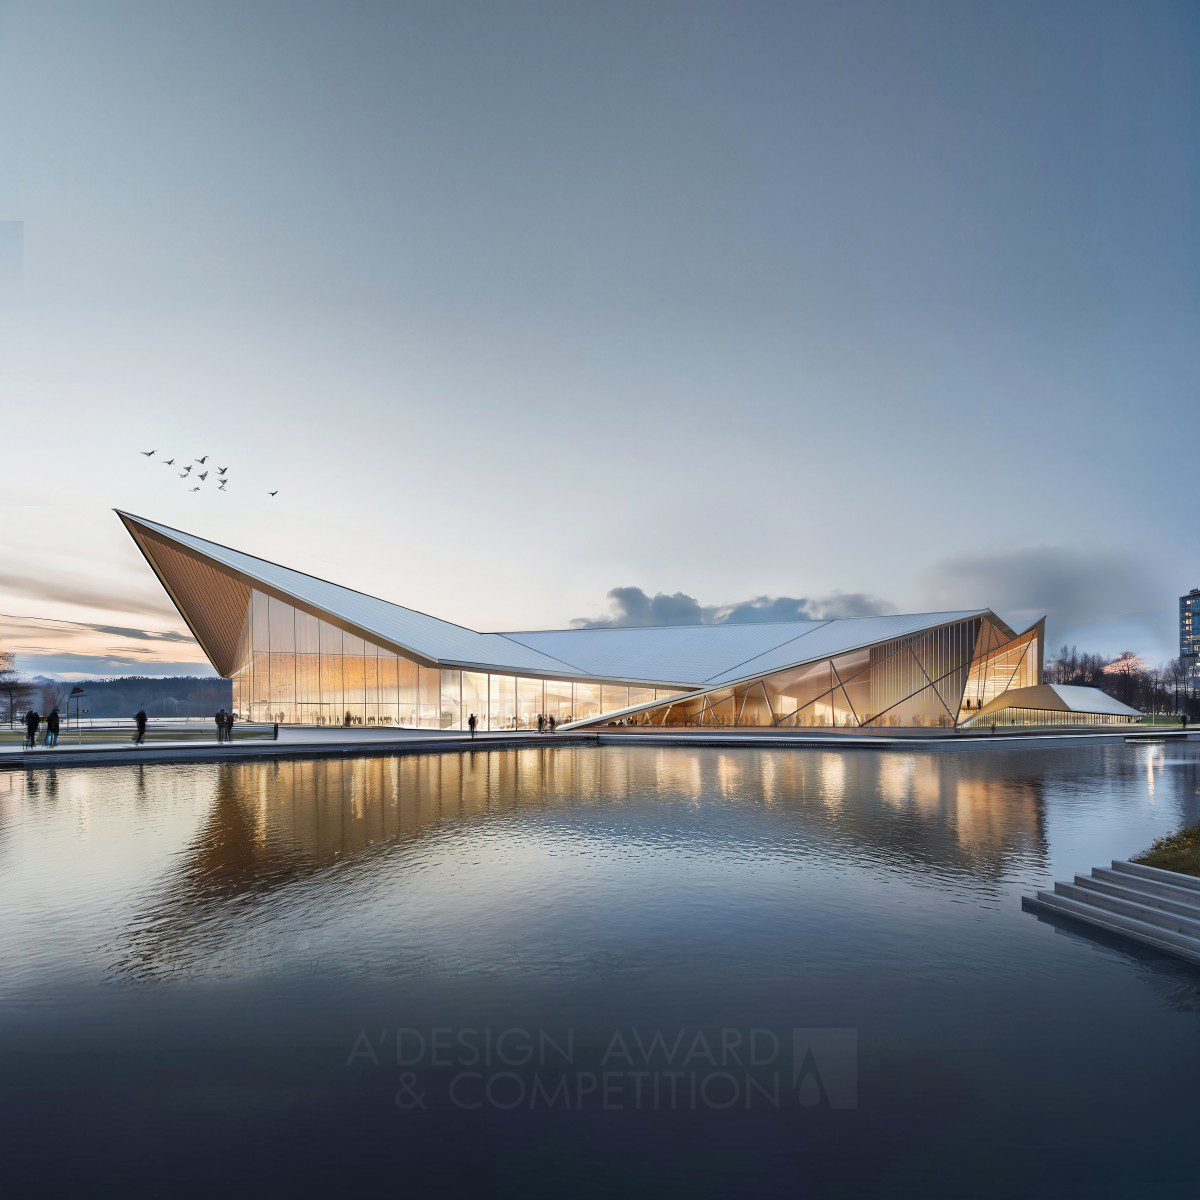 xuechen chen wins Silver at the prestigious A' Idea and Conceptual Design Award with The Folding Boat Community Center.